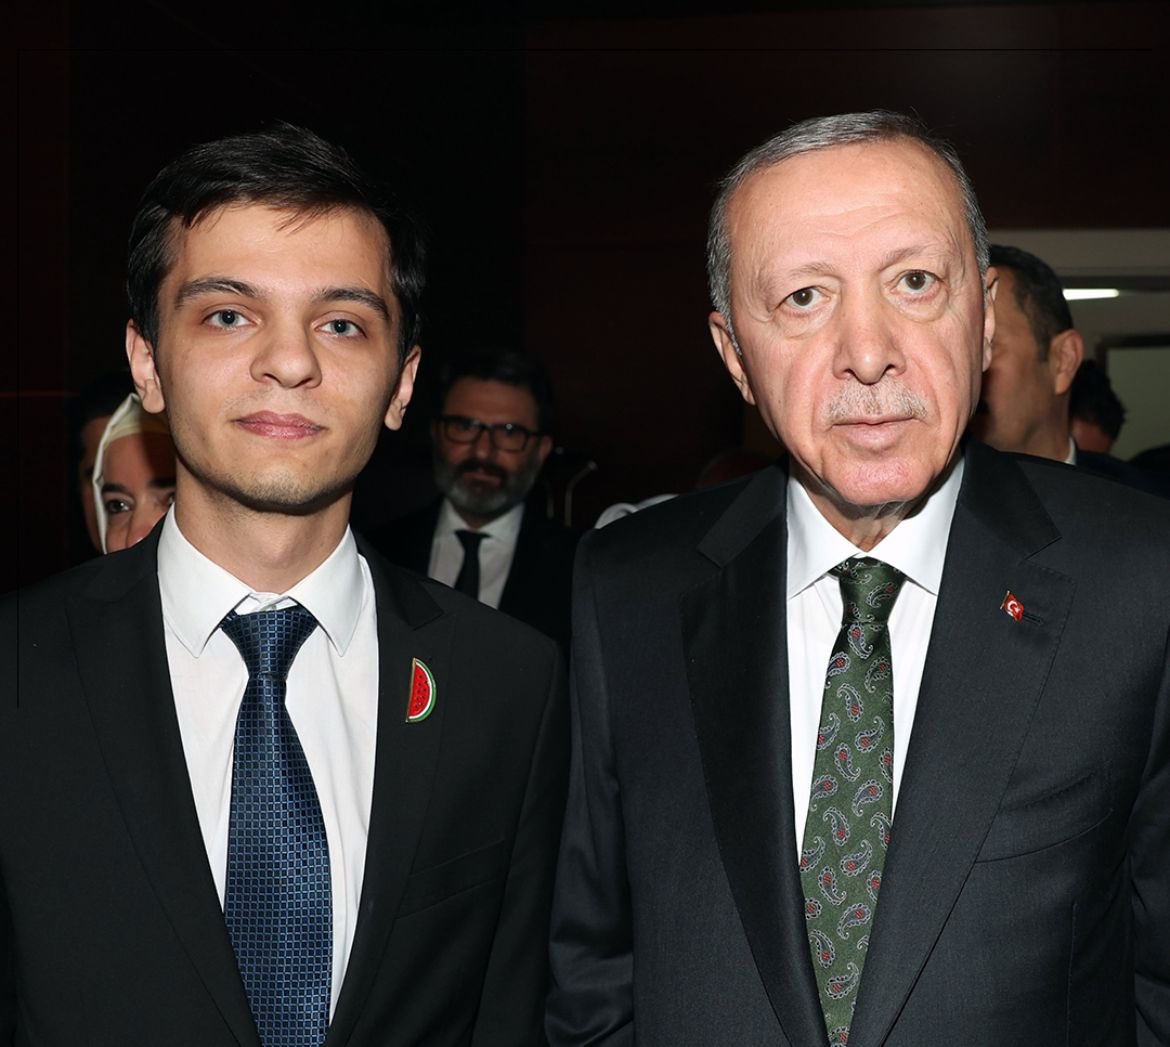 Cumhurbaşkanı Erdoğan, Avrupa Wushu Kung Fu Şampiyonası'nda Filistin bayrağı açıp dabke dansı yaptığı için şampiyonluğu iptal edilen Necmettin Erbakan Akyüz ile bir araya geldi.